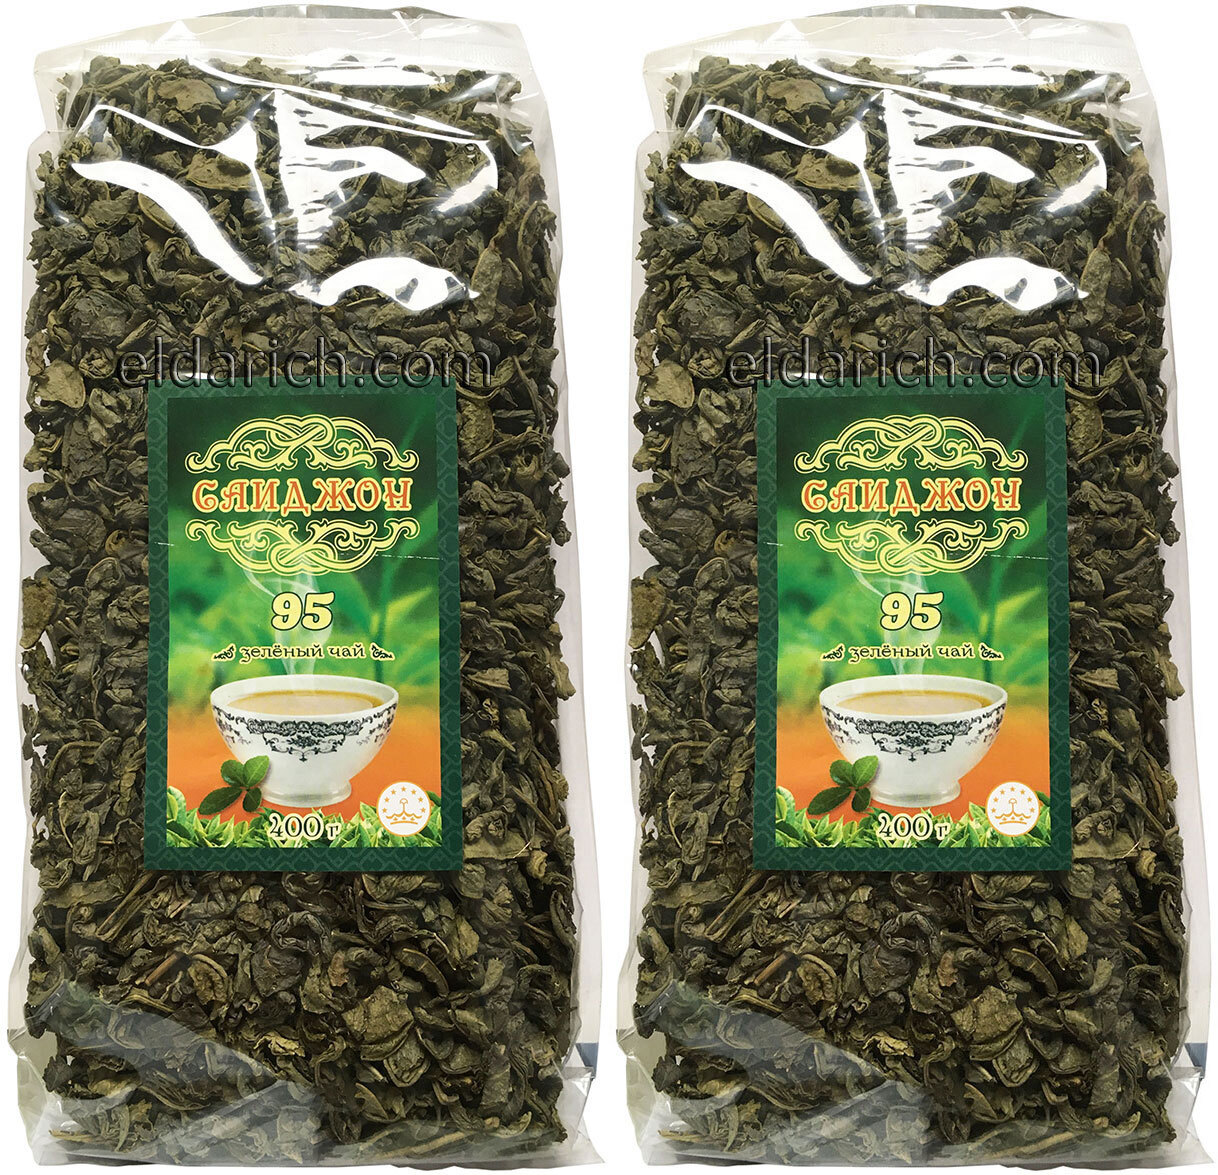 Узбекский чай 95. Бако чай зеленый 95. Чай 95 зеленый Ташкент. Тоза 95 зеленый чай. Самур чай зеленый 95 400гр 1кор 20шт.